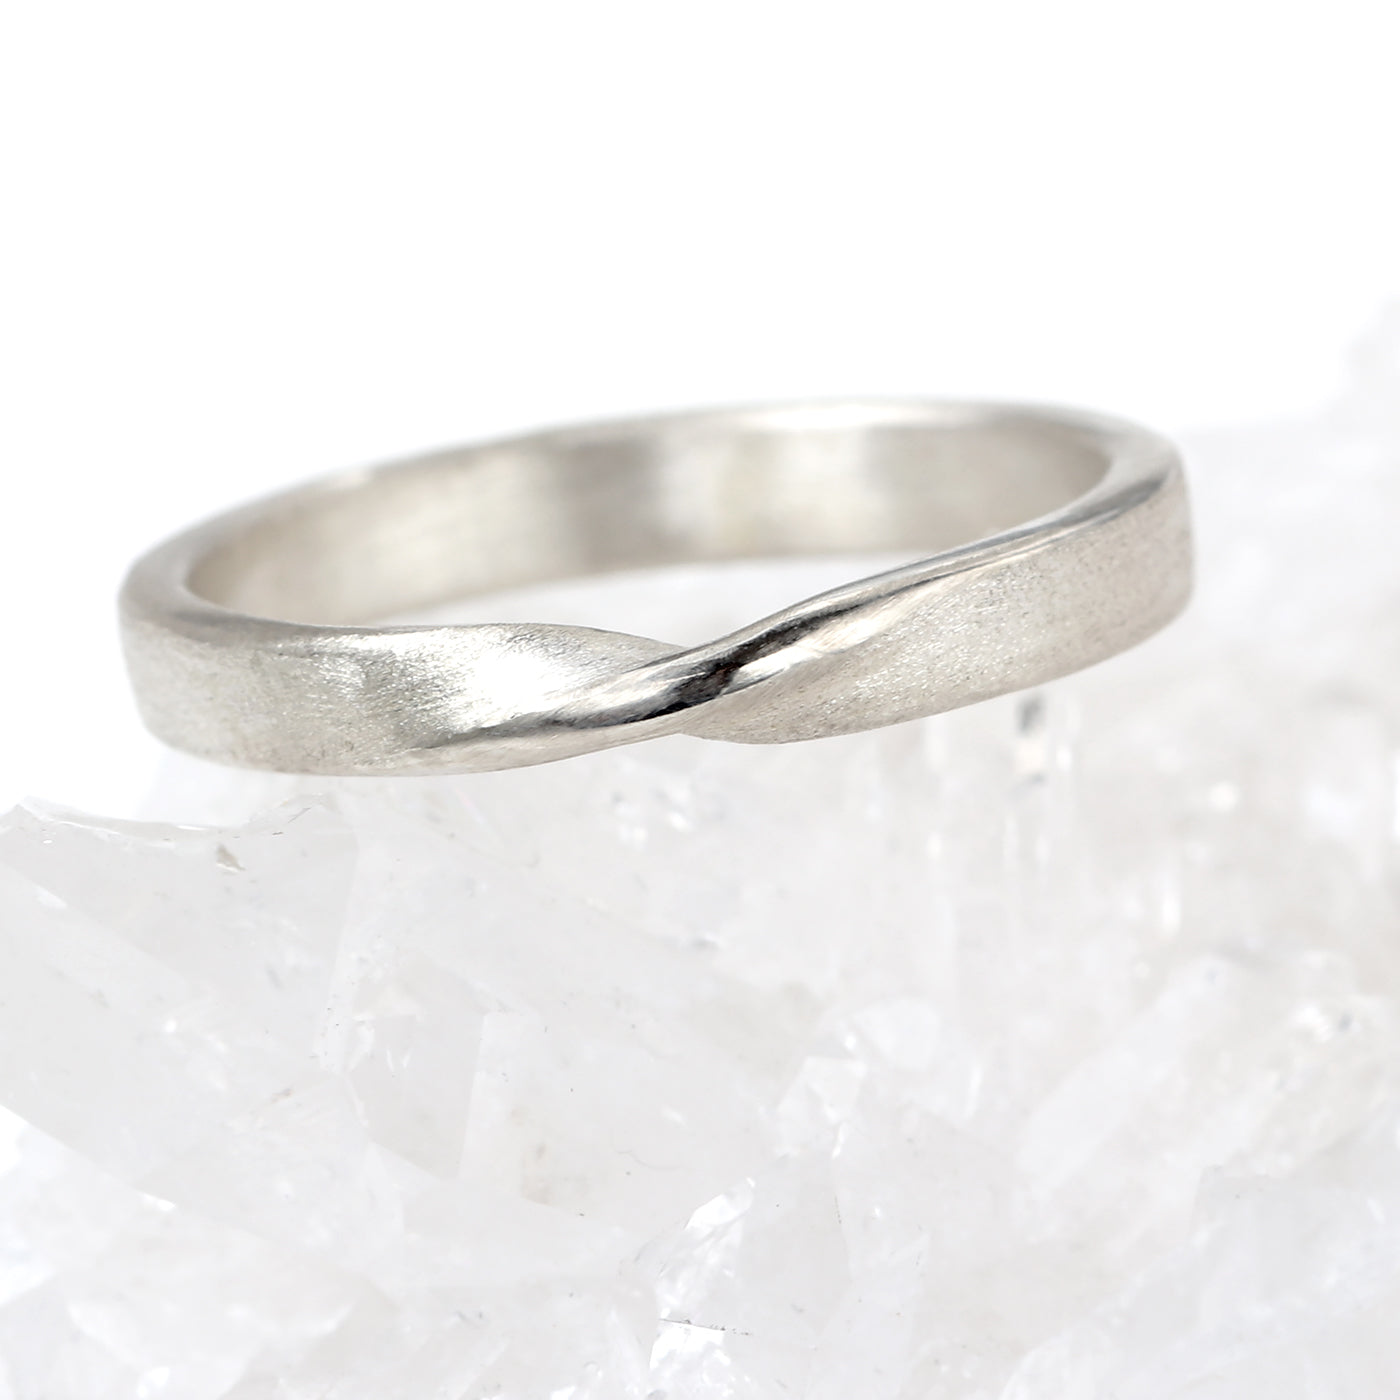 18ct White Gold 3mm Spun Silk Ribbon Twist Wedding Ring